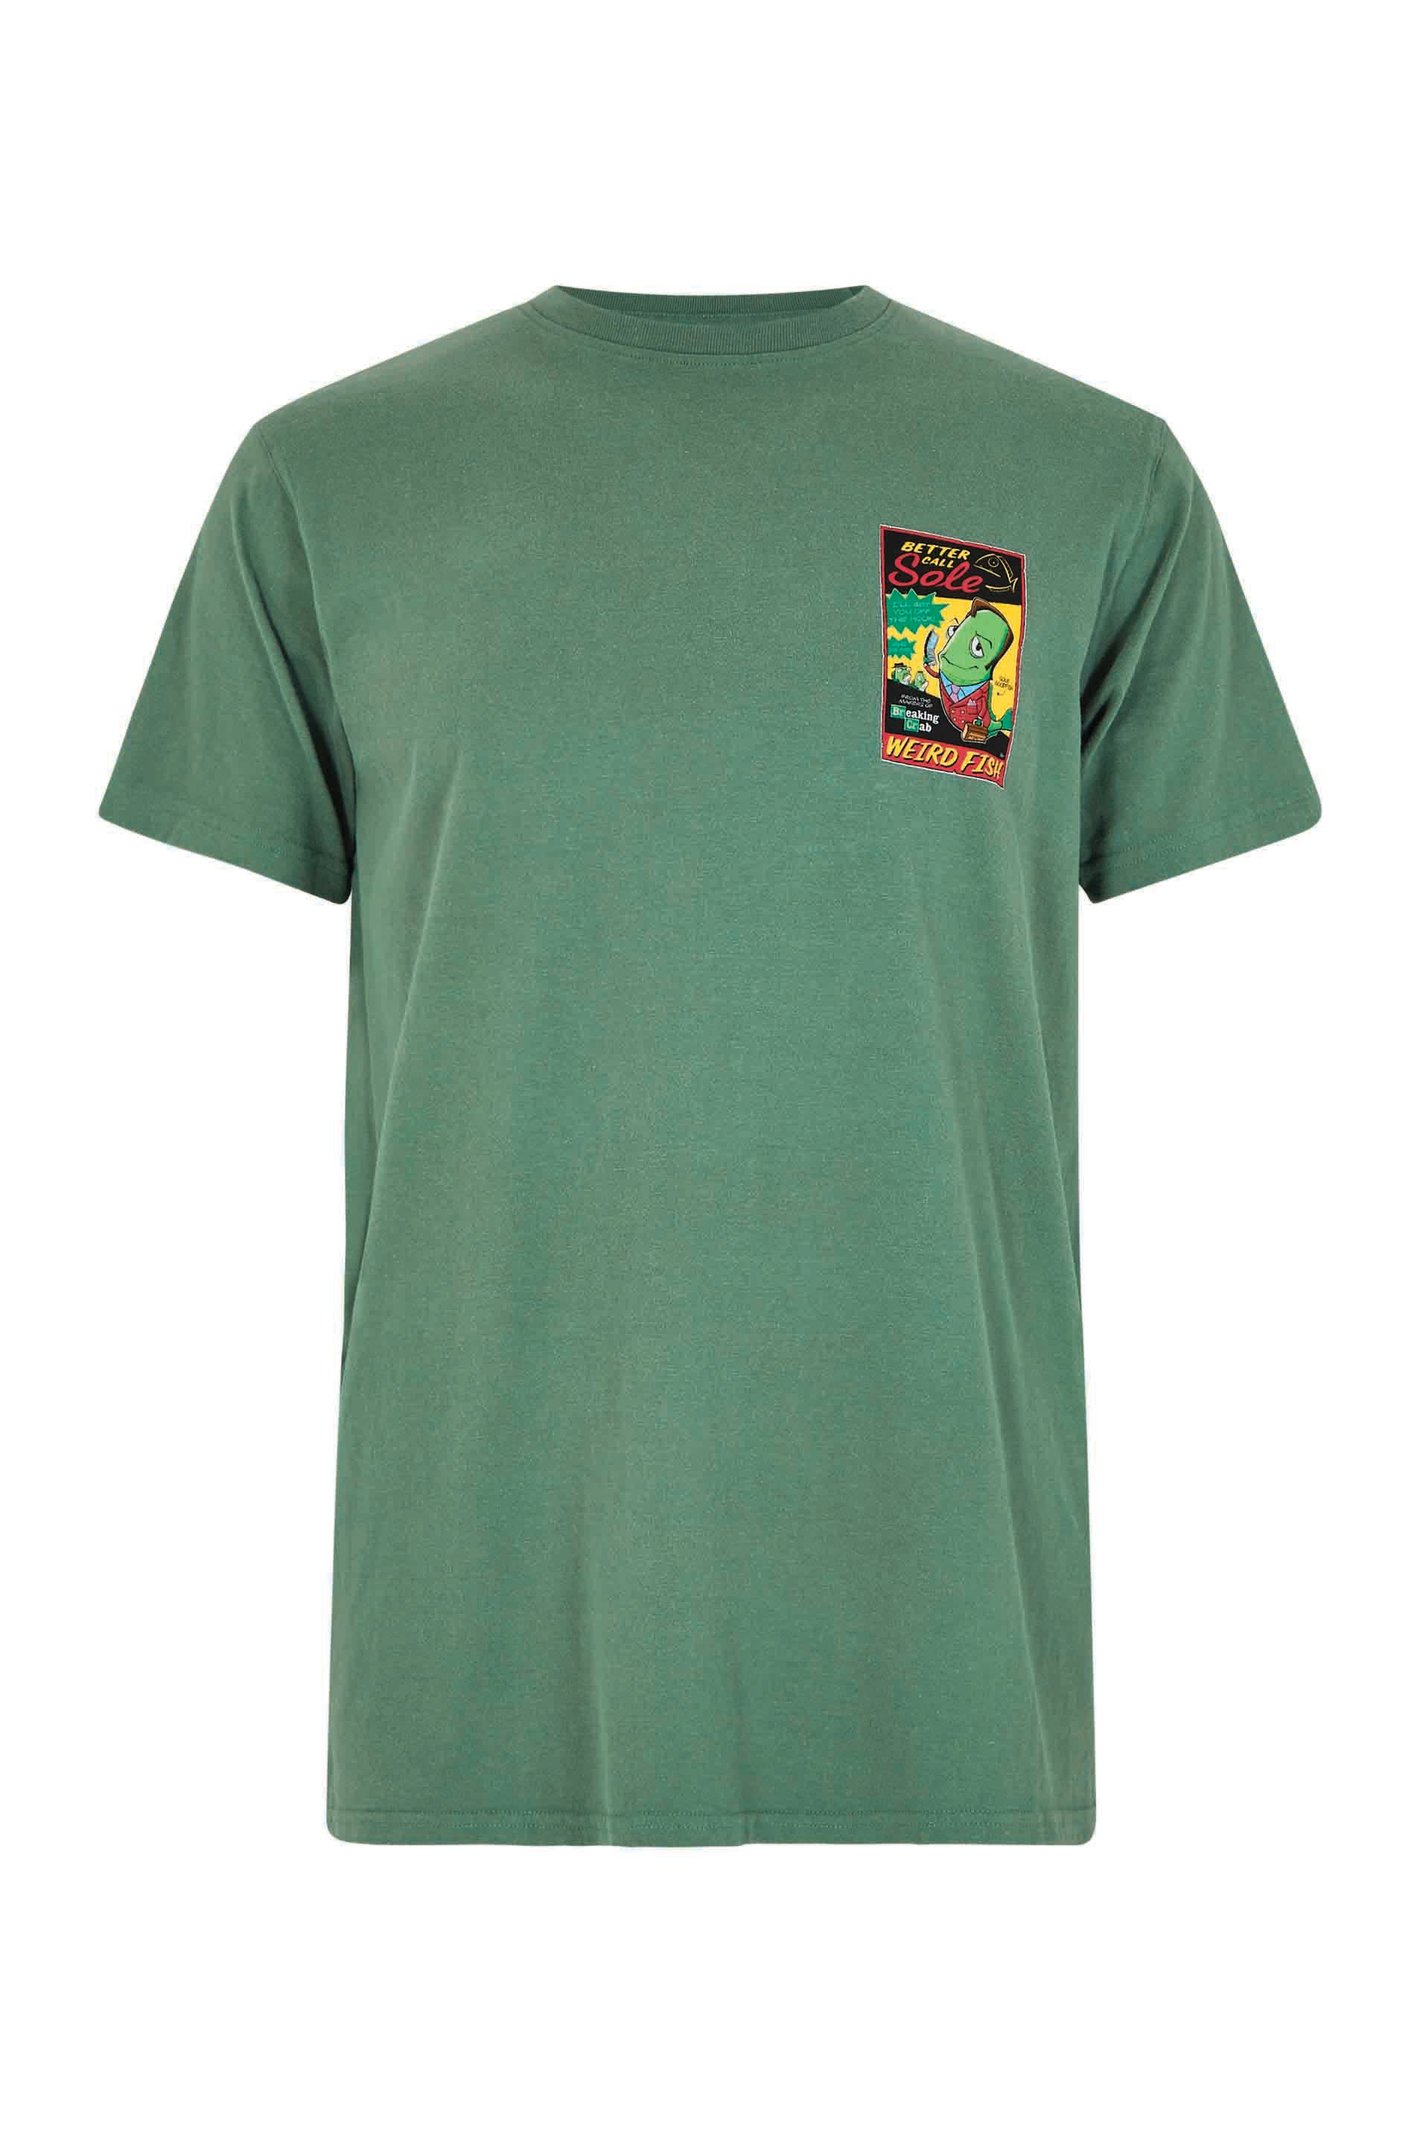 Weird Fish Call Sole Artist T-Shirt Dusky Green Size M